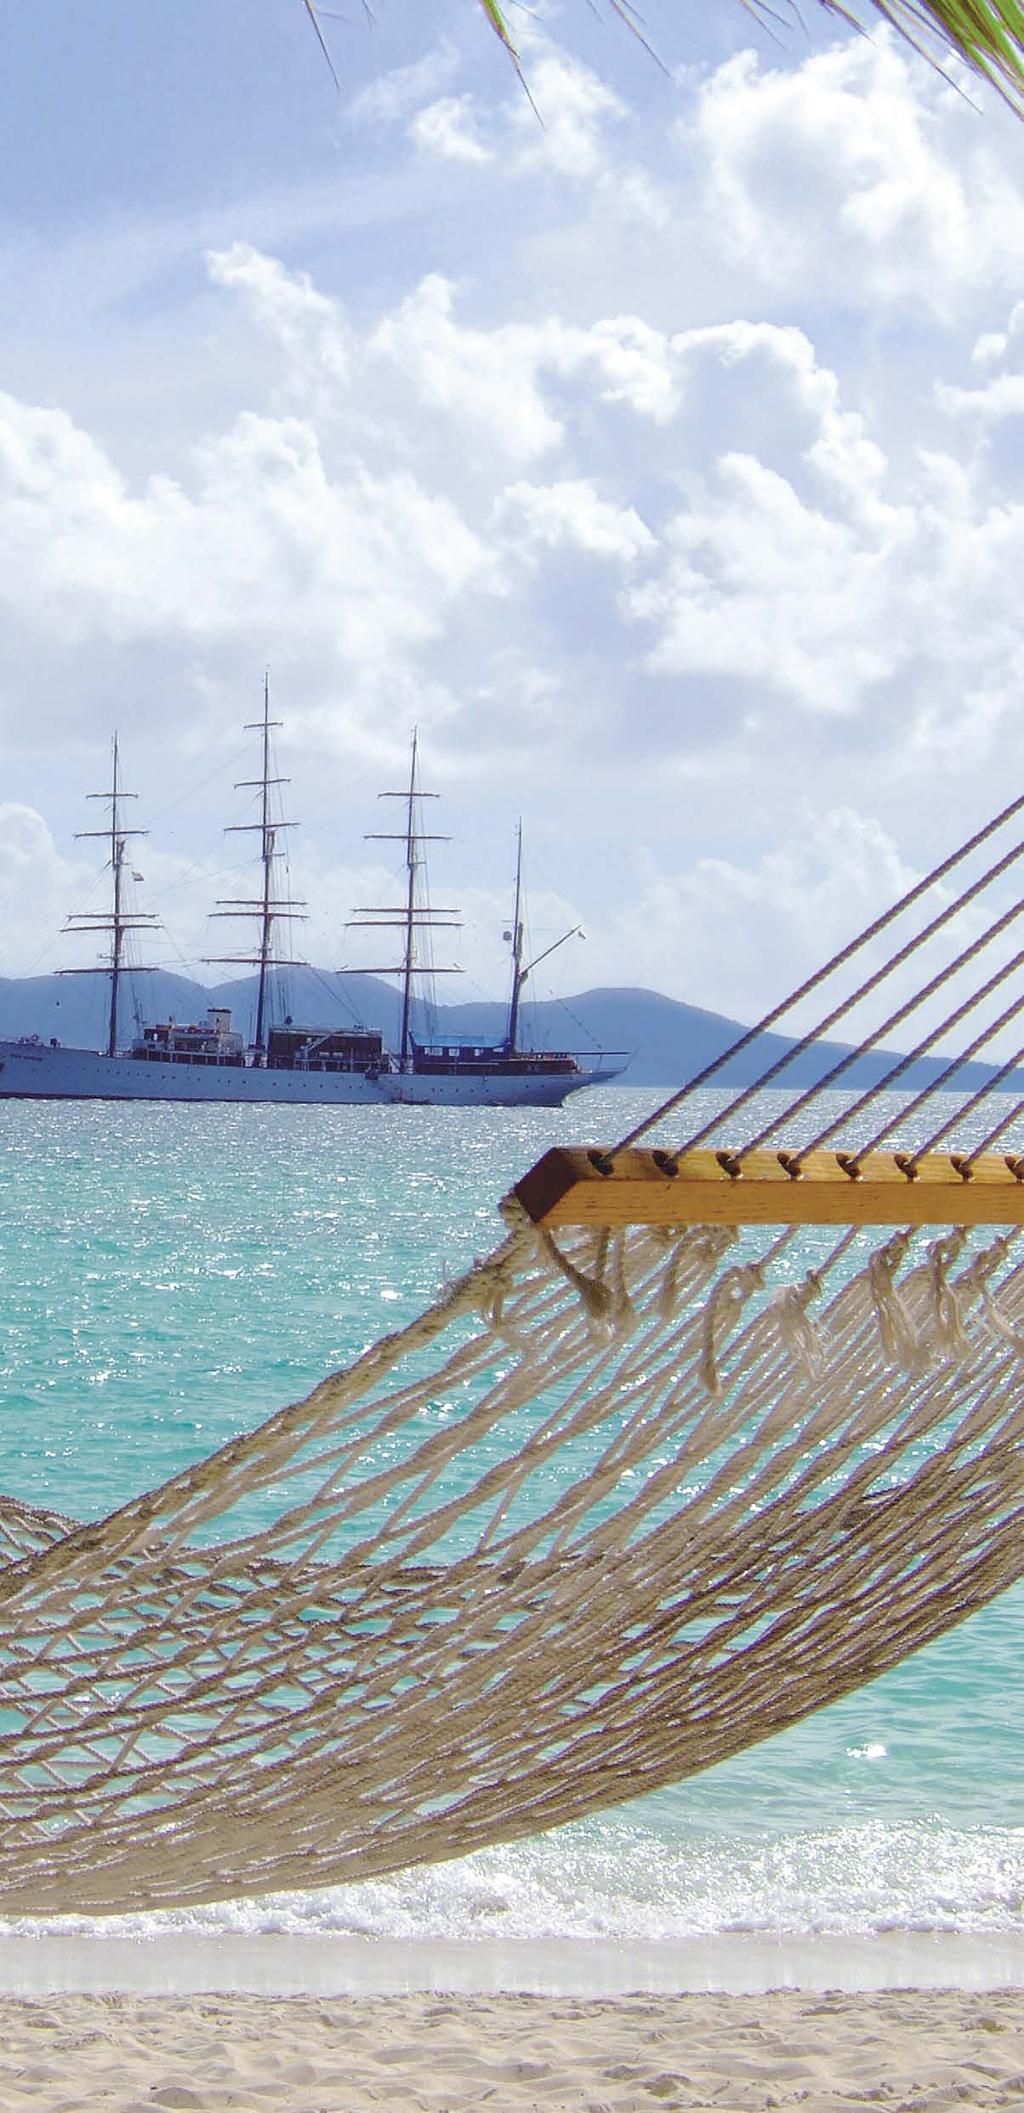 Lucia Bequia Barbados Curaçao Unser Reisetipp: Bonaire Bequia Union Island Grenada Barbados VENEZUELA Segeln mit dem sommerwarmen Passat 10 Nächte von Barbados nach Curaçao inklusive 2-tägigem